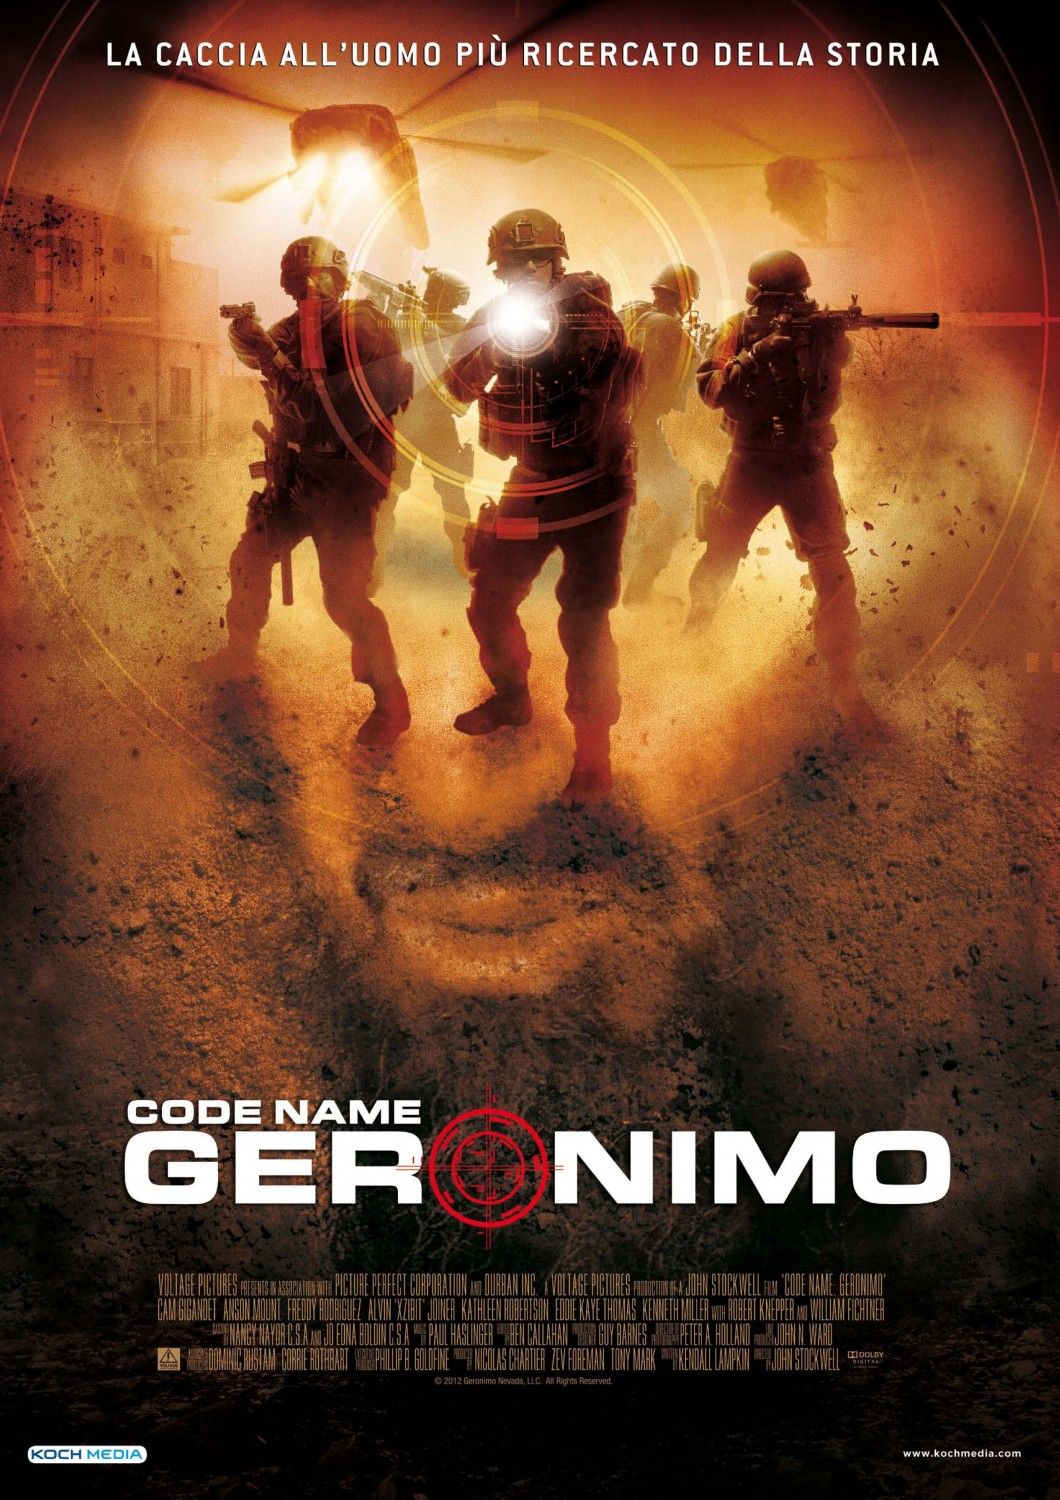 Code name geronimo movie